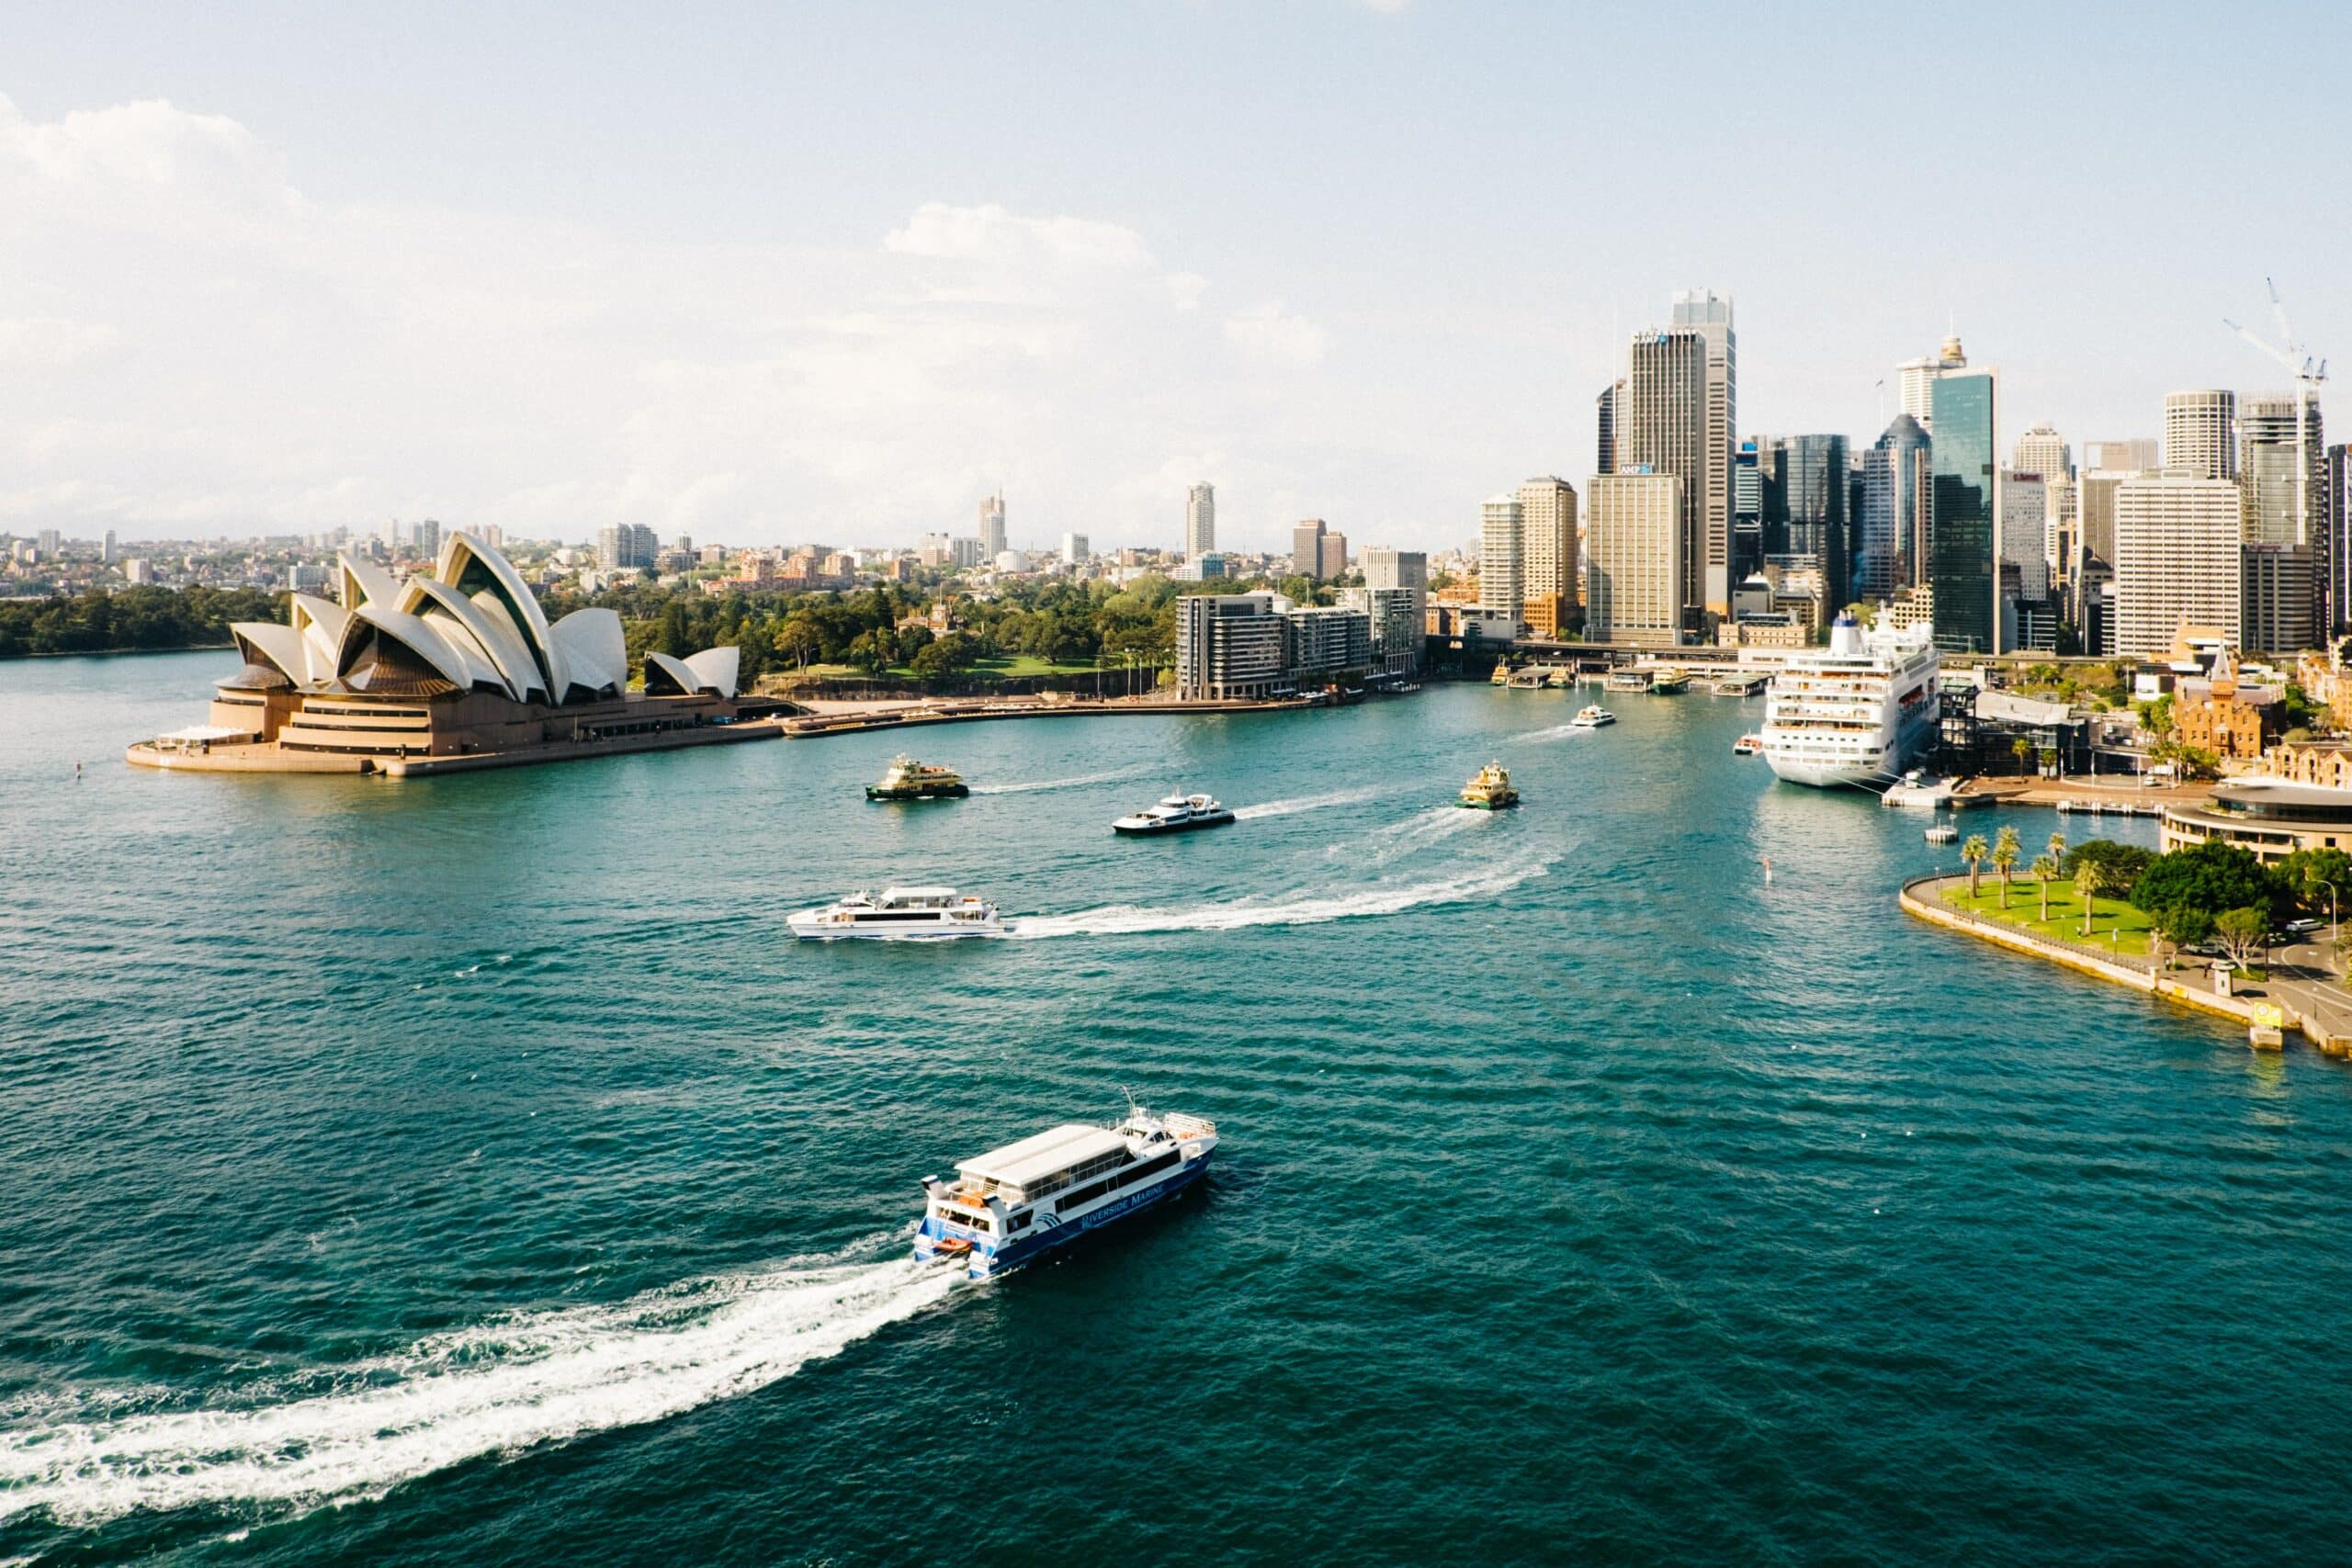 Vista da cidade Sydney, Austrália com barcos ao mar e cidade ao fundo cheia de prédios altos. Representa chip celular Austrália